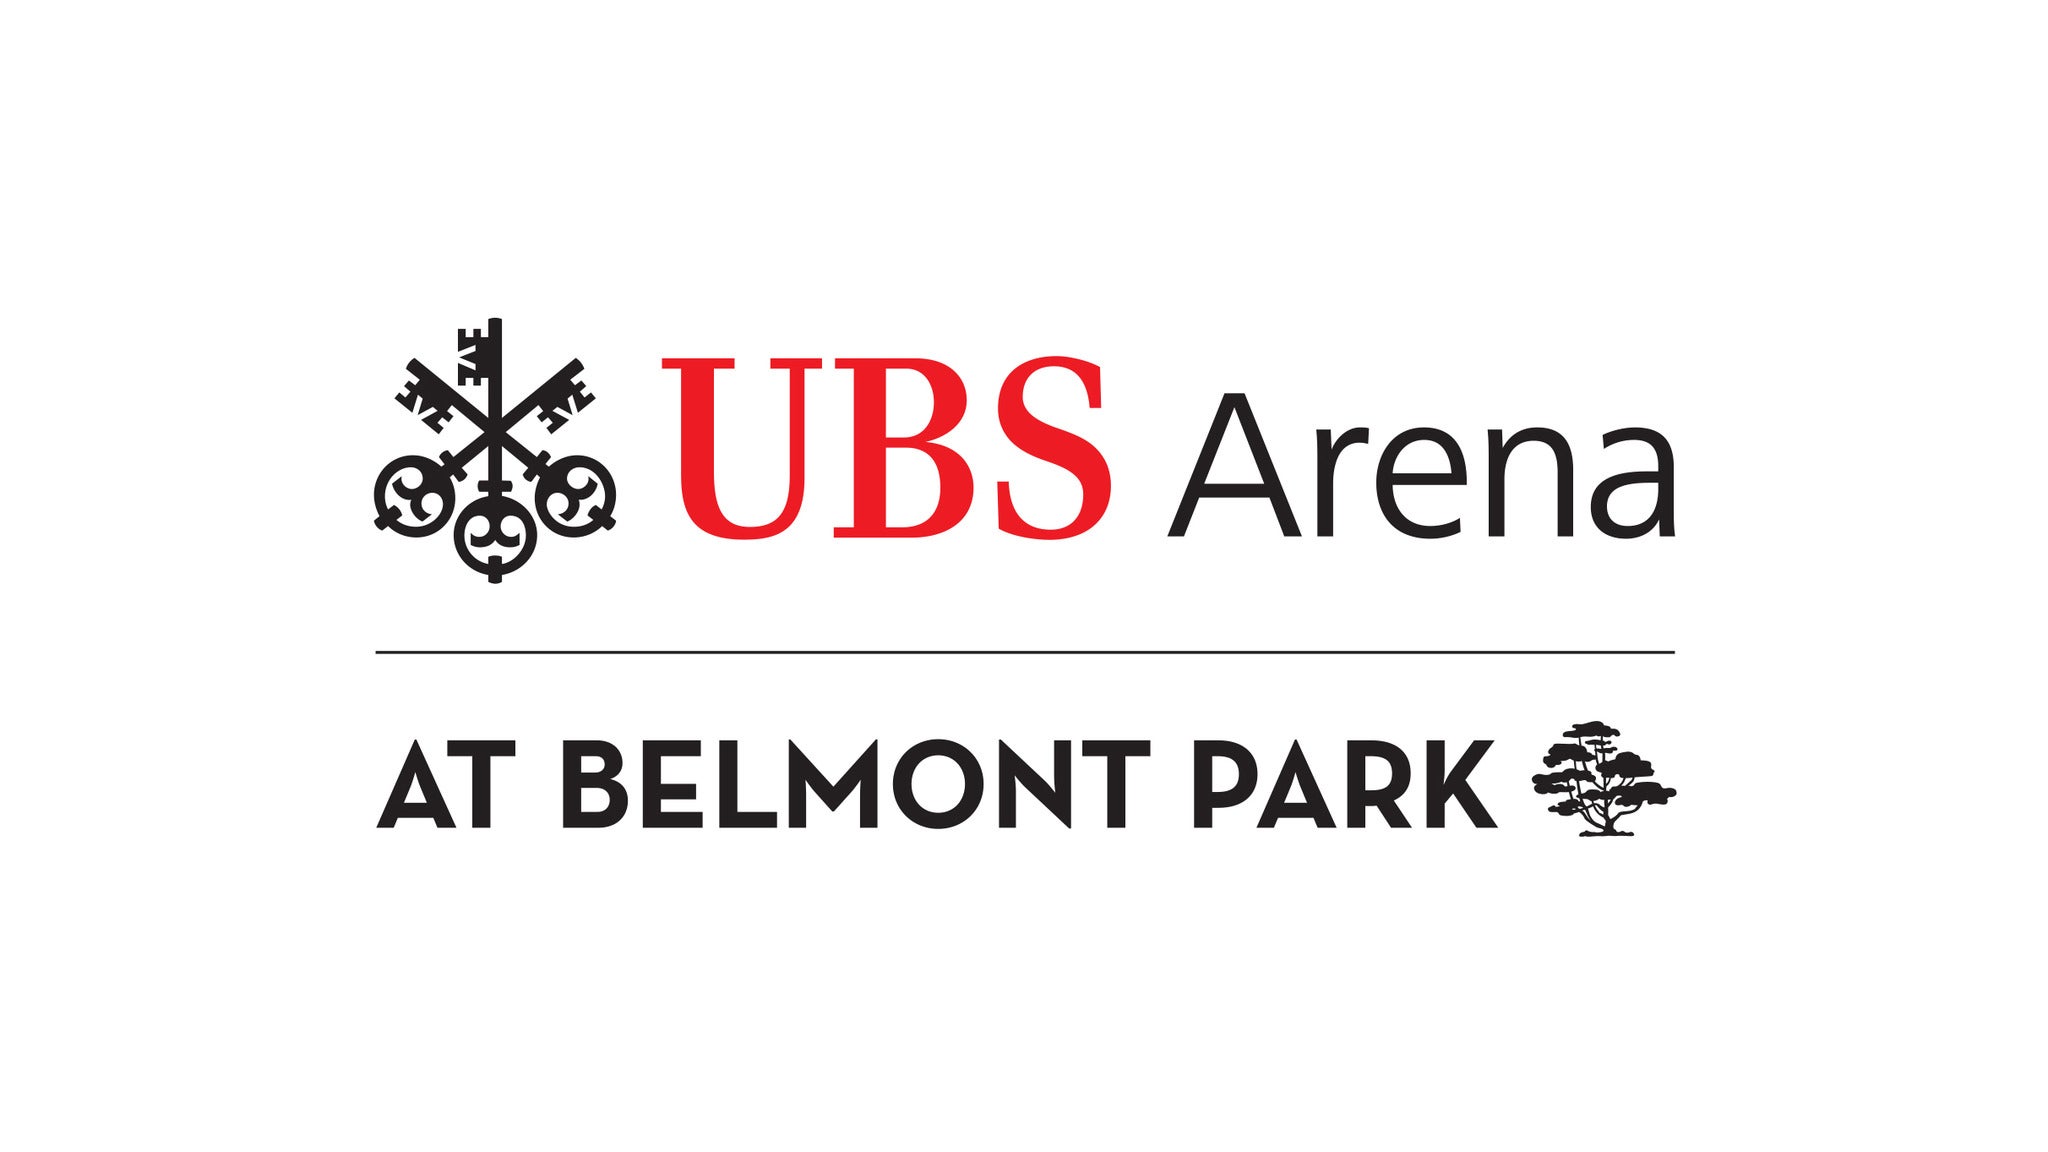 UBS Arena Parking: Harlem Globetrotters in Belmont Park promo photo for Internet presale offer code